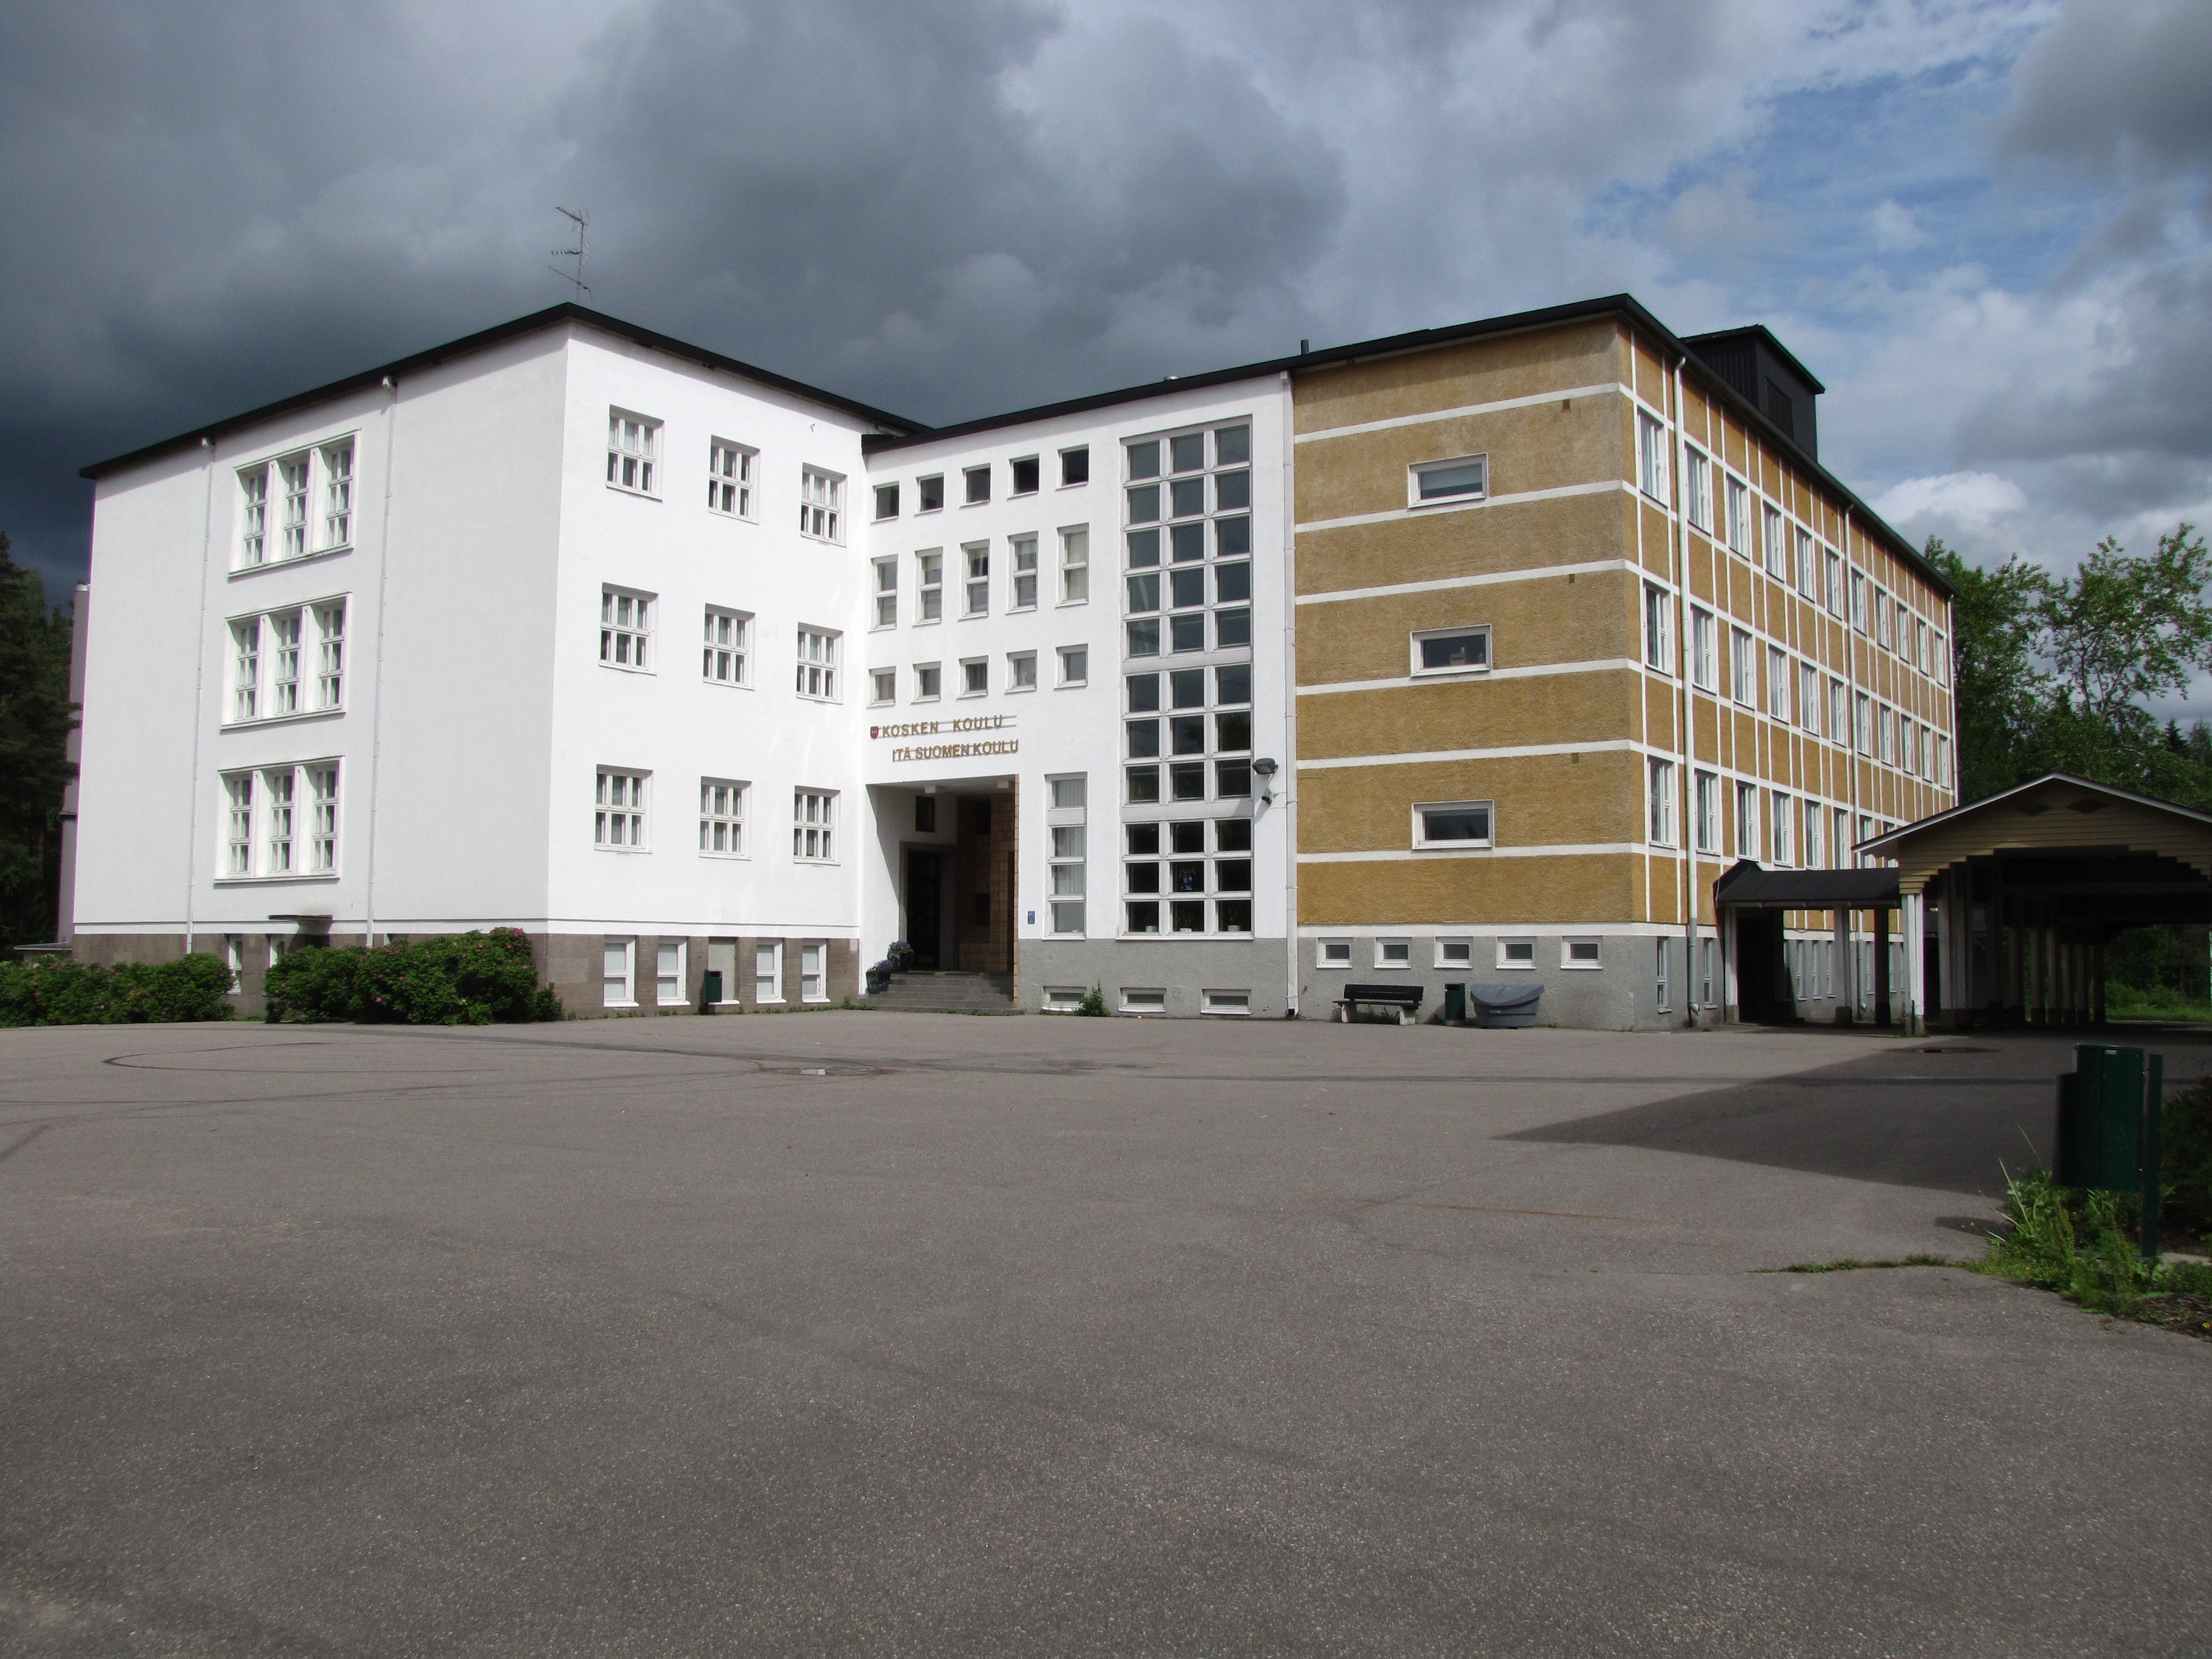 File:Kosken koulu  - Wikimedia Commons